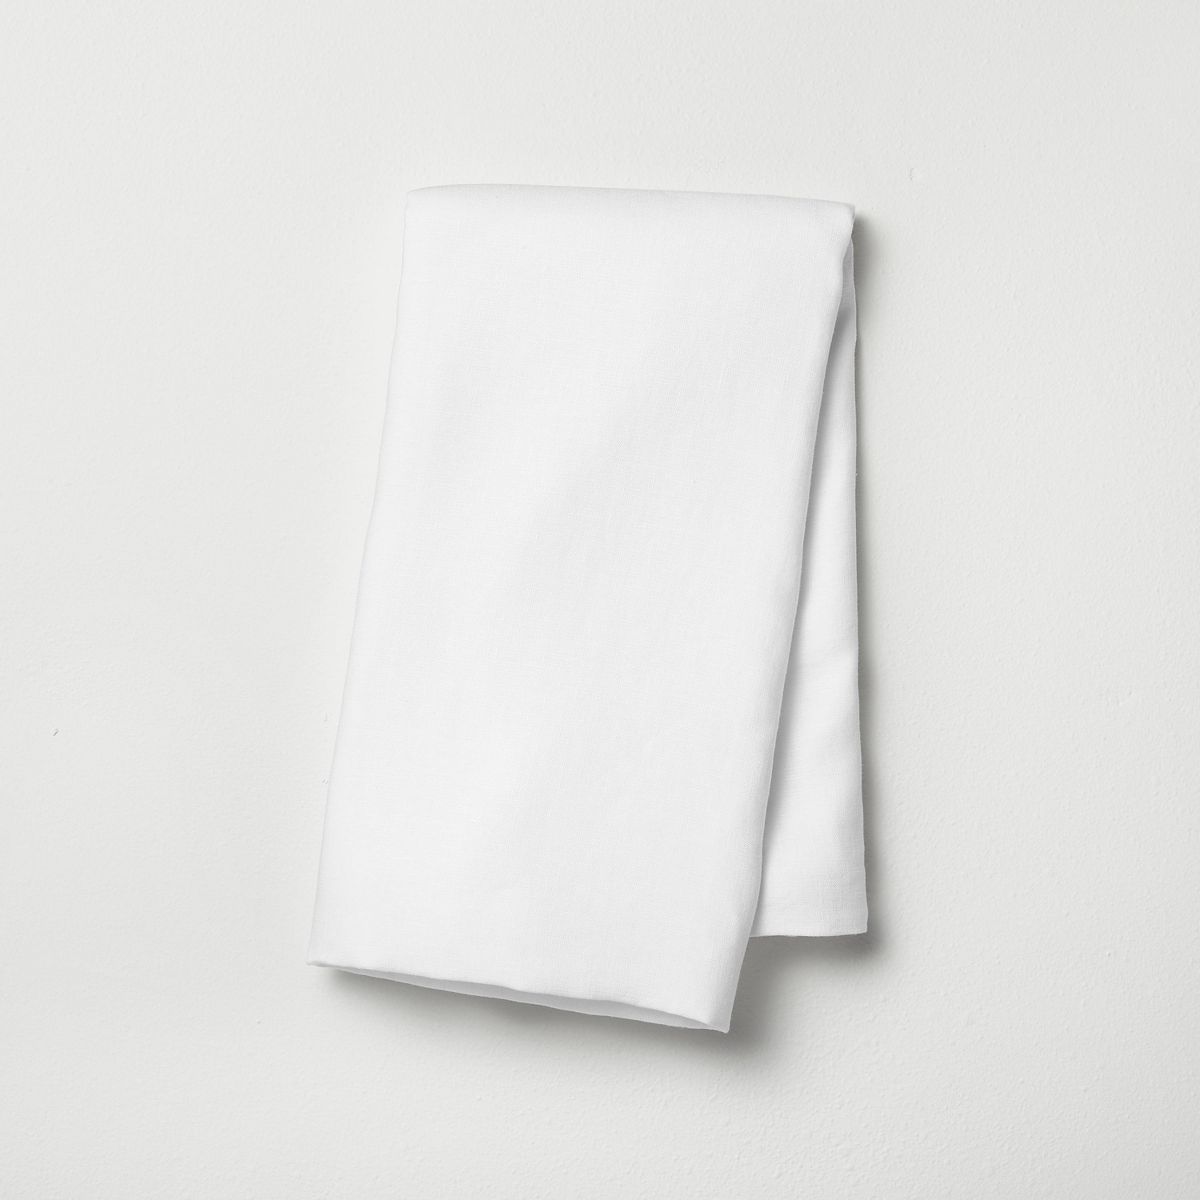 Linen Body Pillow Cover - Casaluna™ | Target